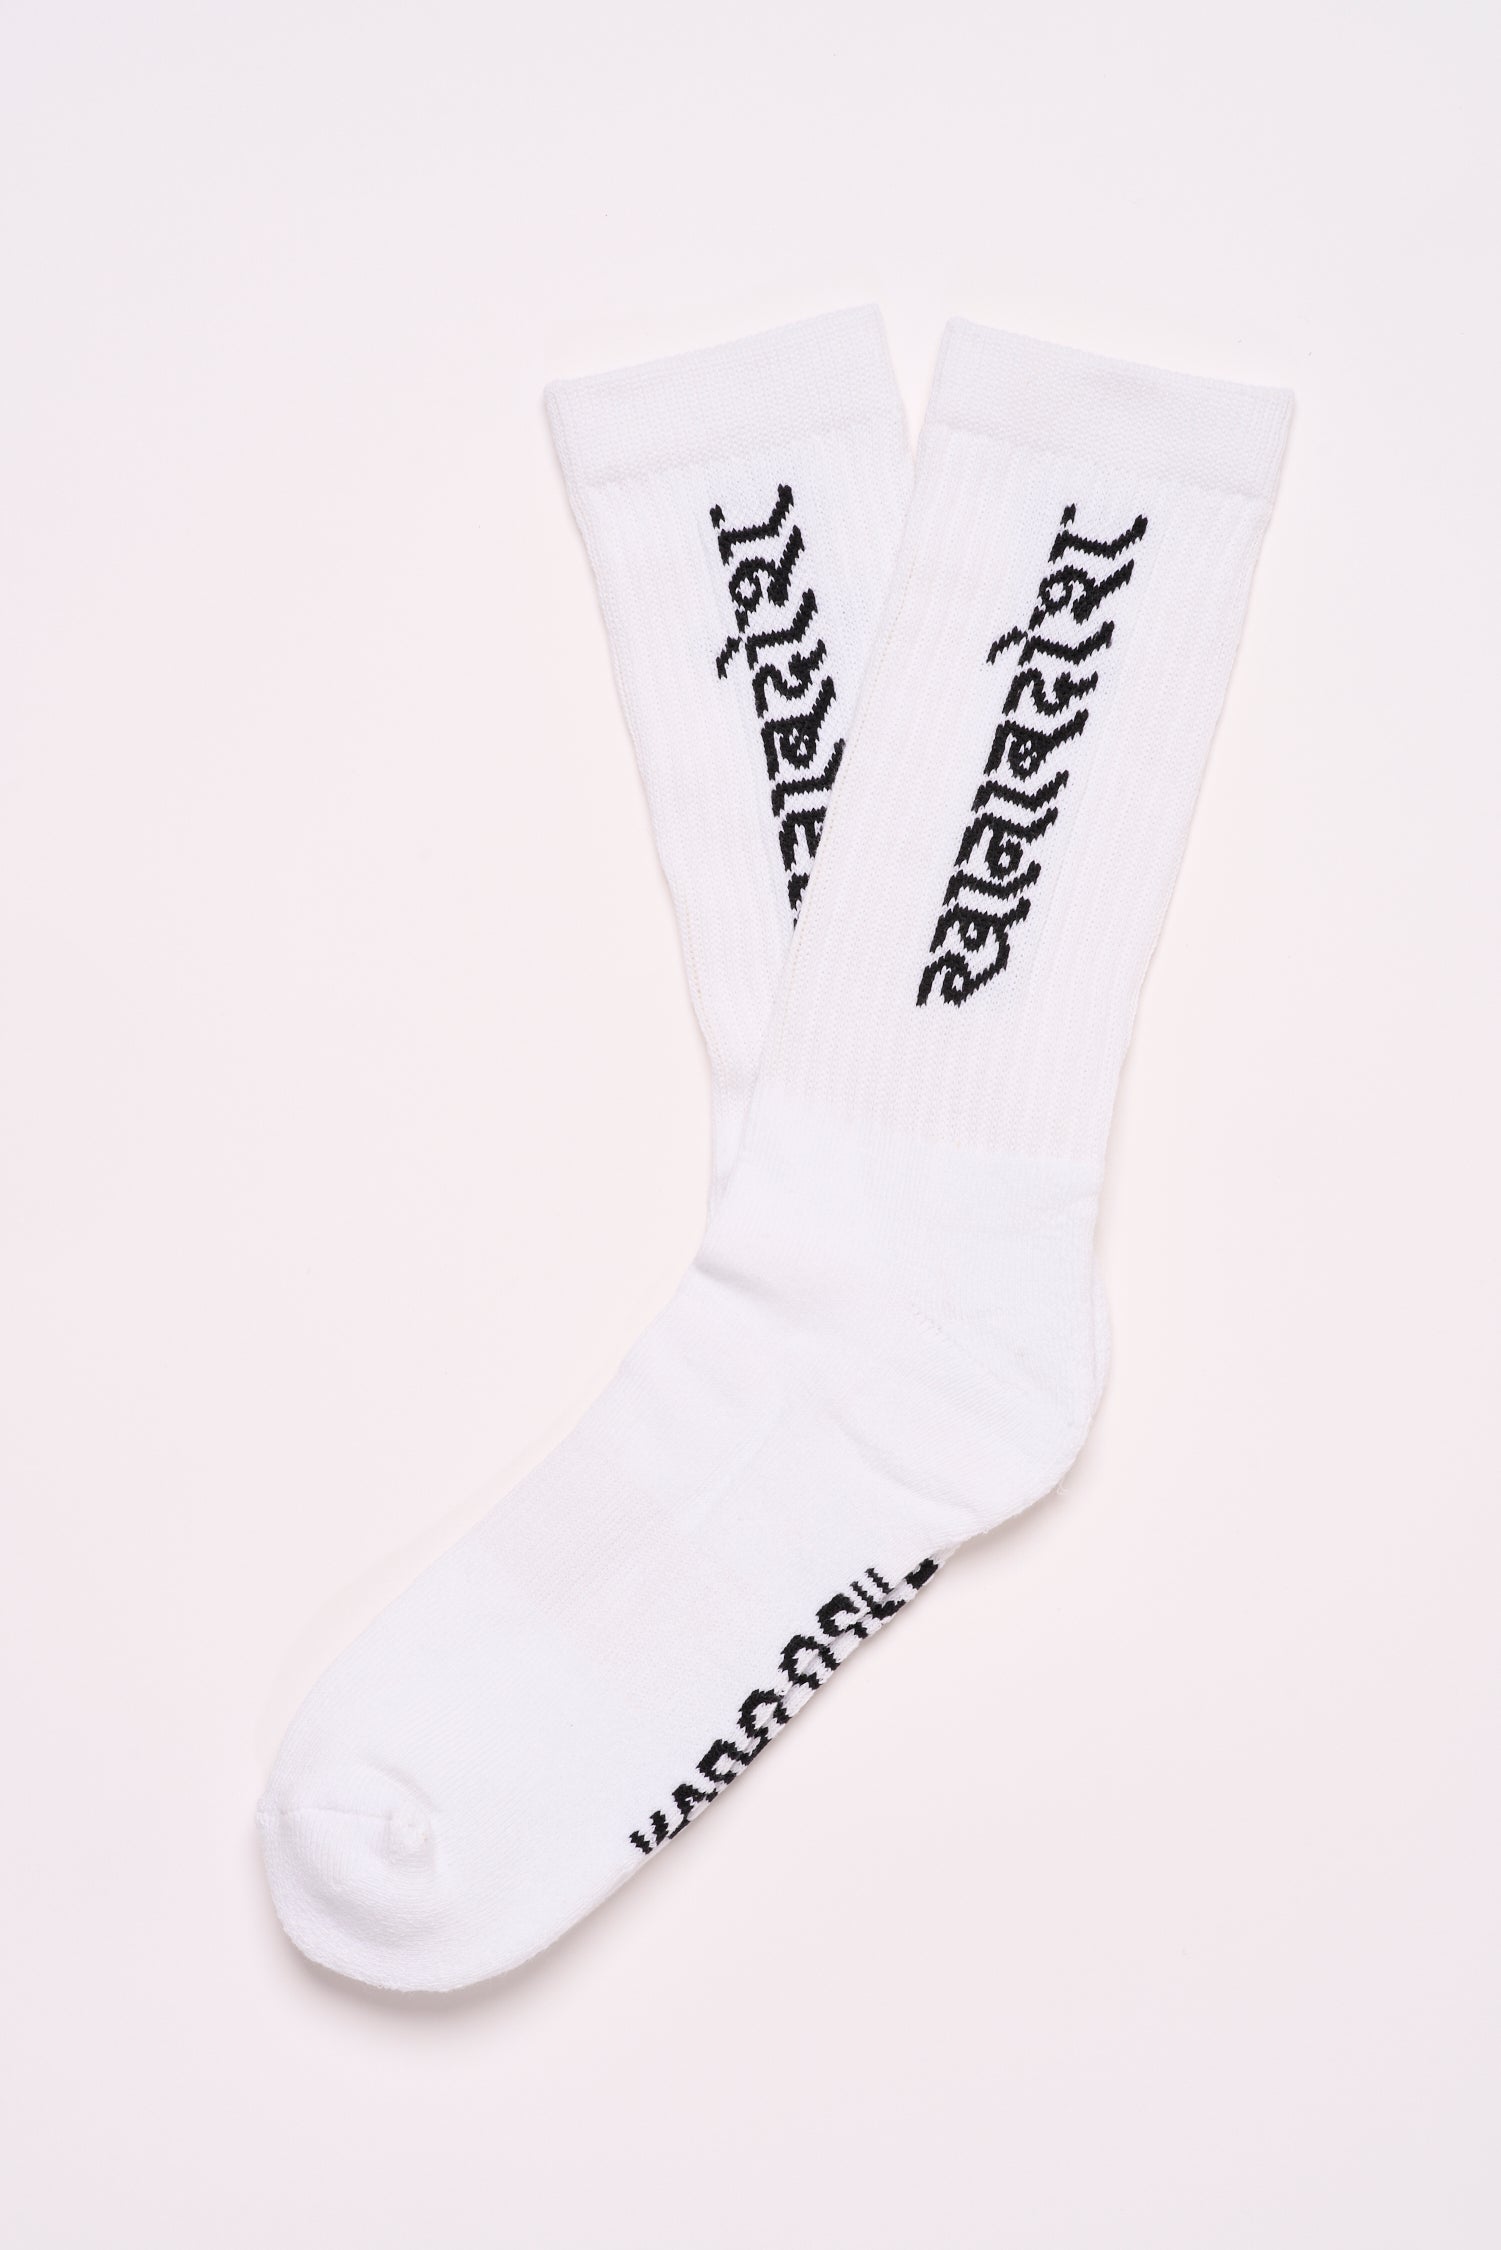 Socks - Hindi - White - one size - Unisex